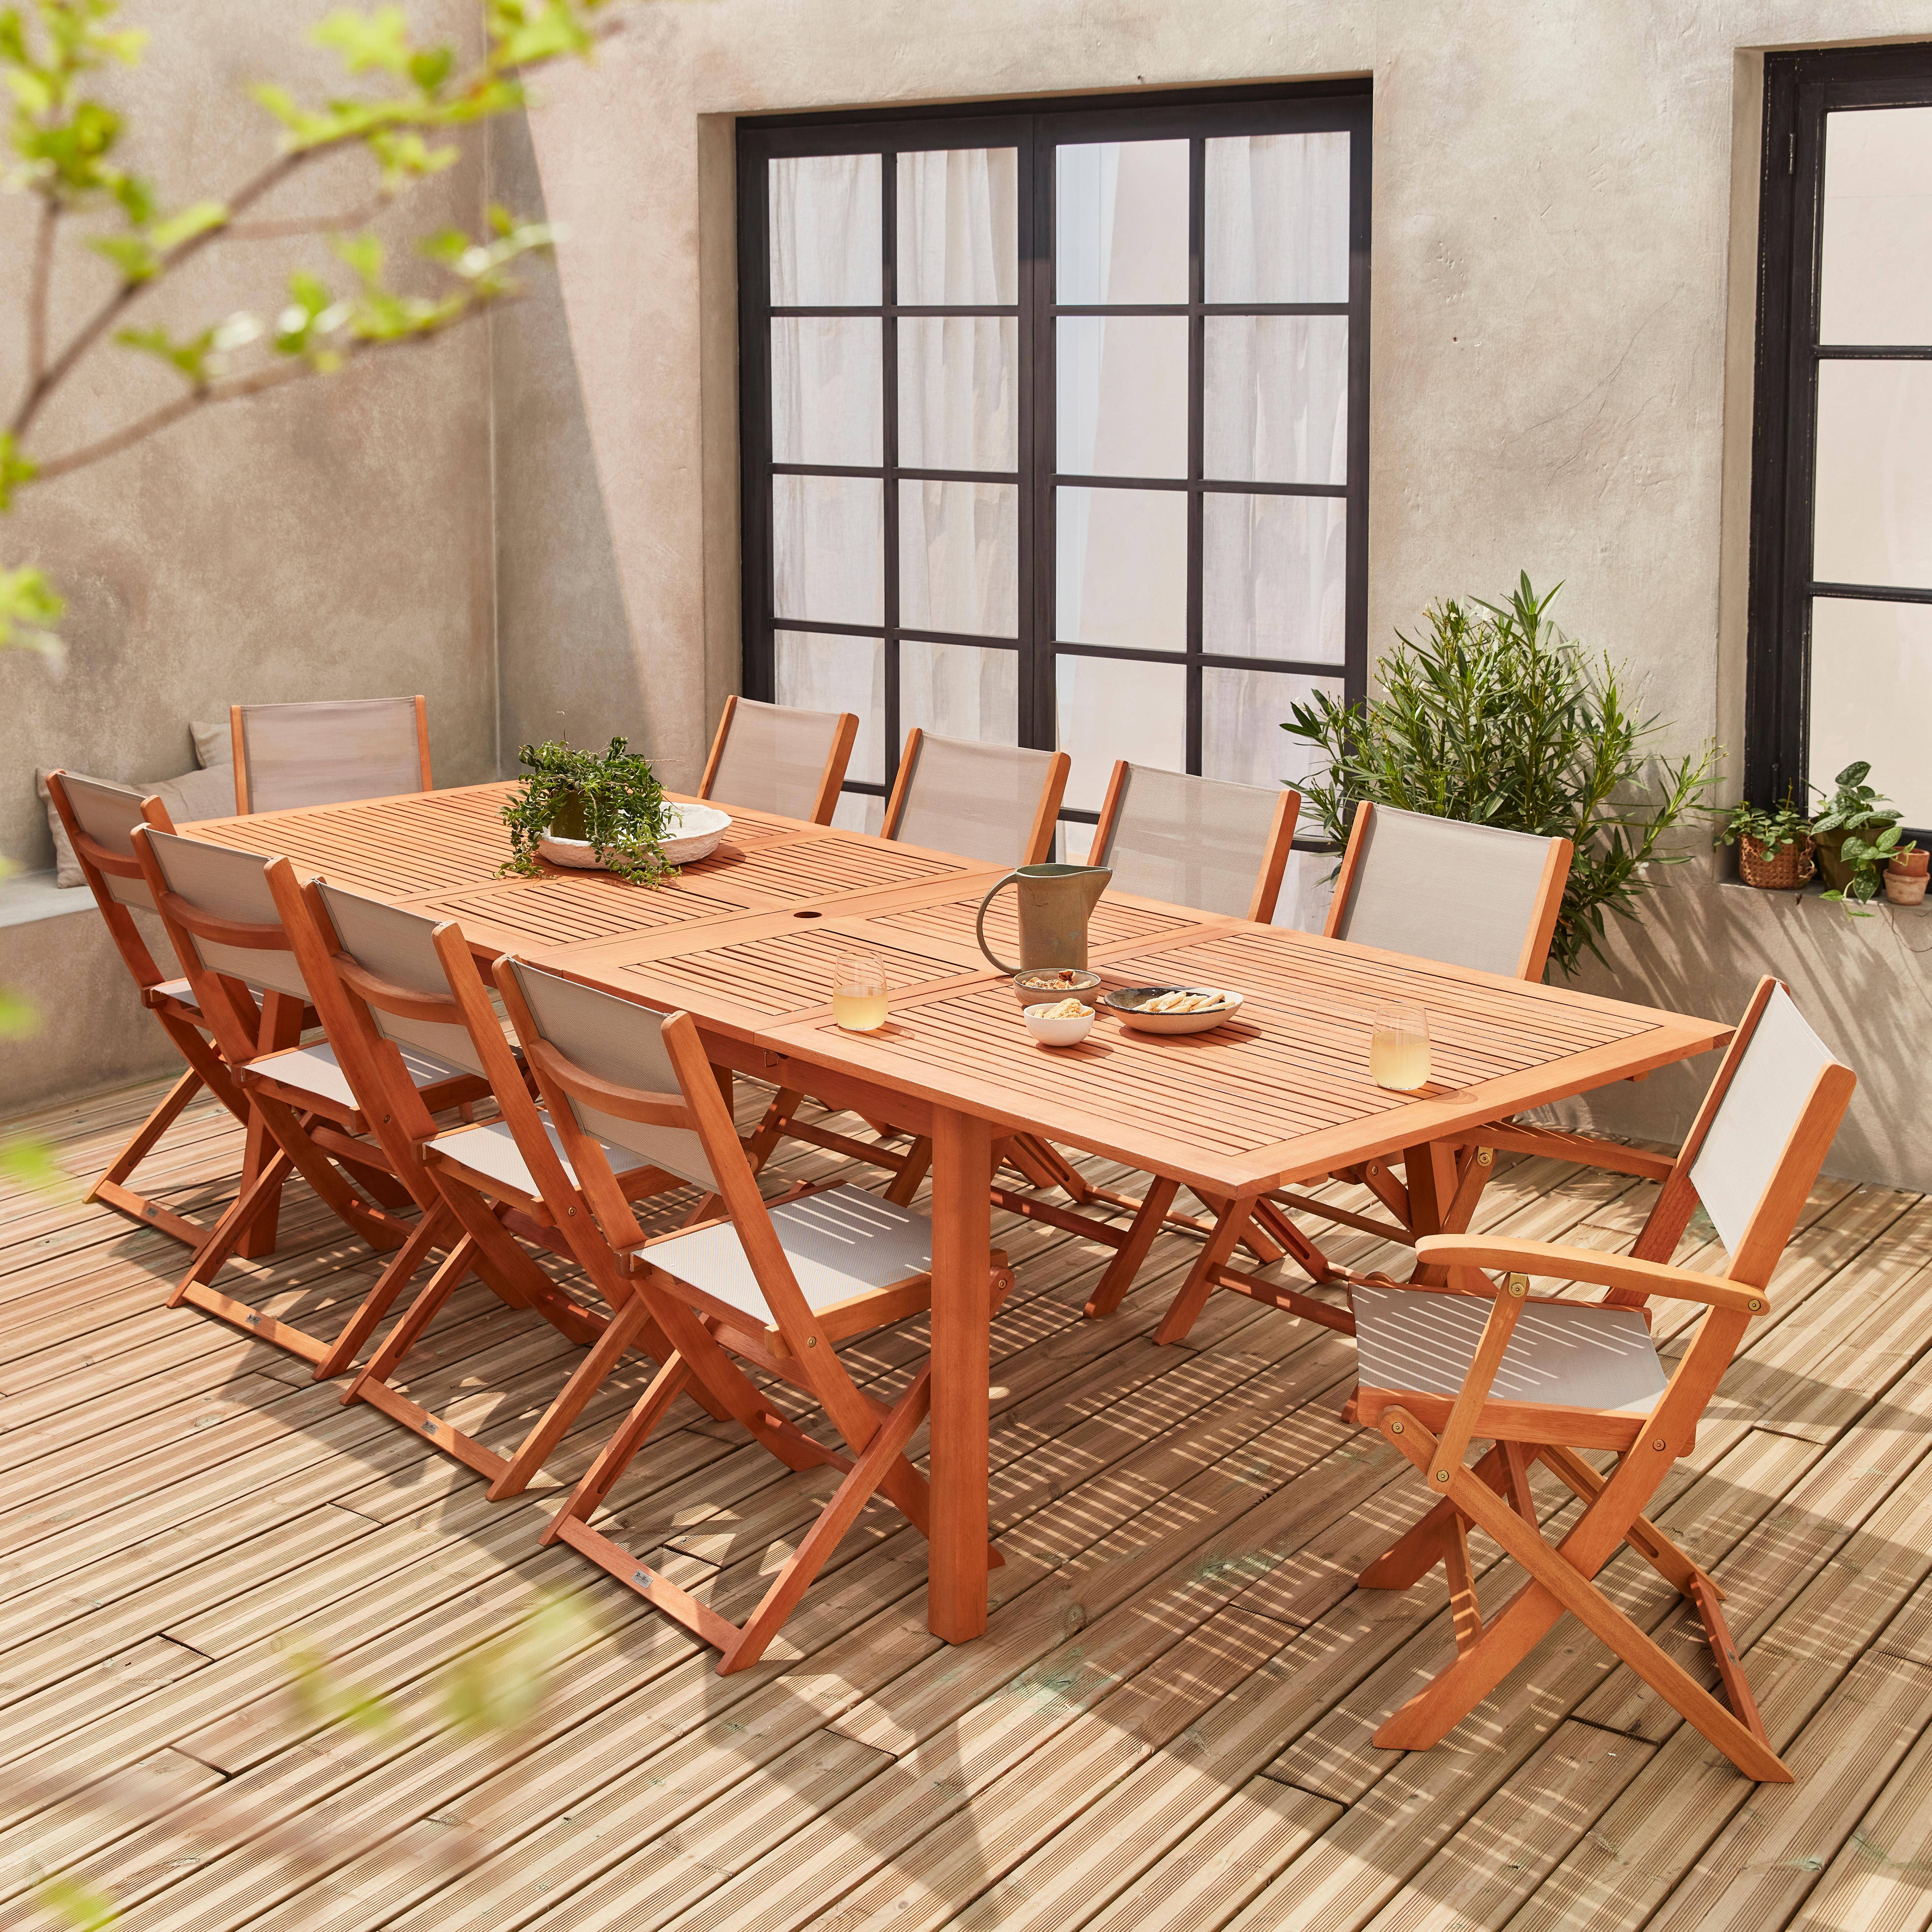 Ausziehbare Gartenmöbel aus Holz - Almeria Tisch 200/250/300cm mit 2 Verlängerungen, 2 Sesseln und 8 Stühlen, aus geöltem FSC Eukalyptusholz und taupgrau Textilene Photo1